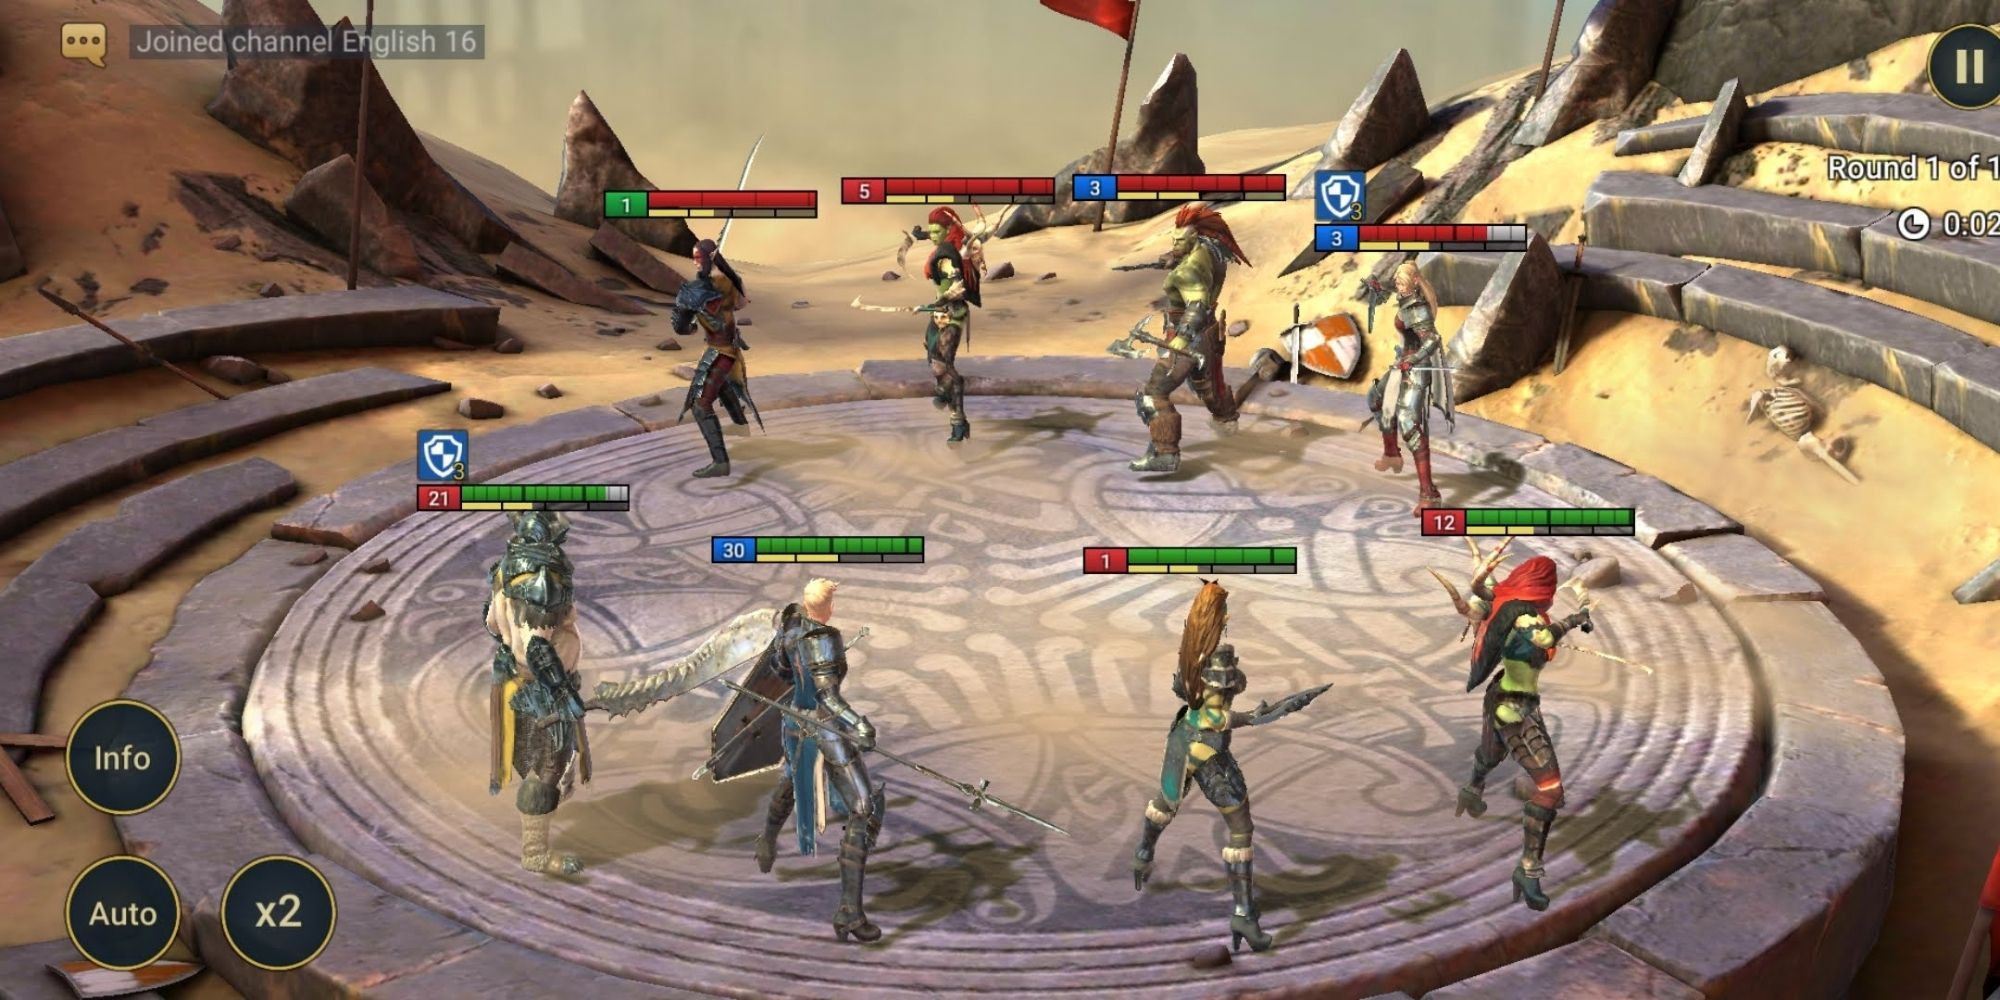 Screenshot of an Arena battle from Raid Shadow Legends.